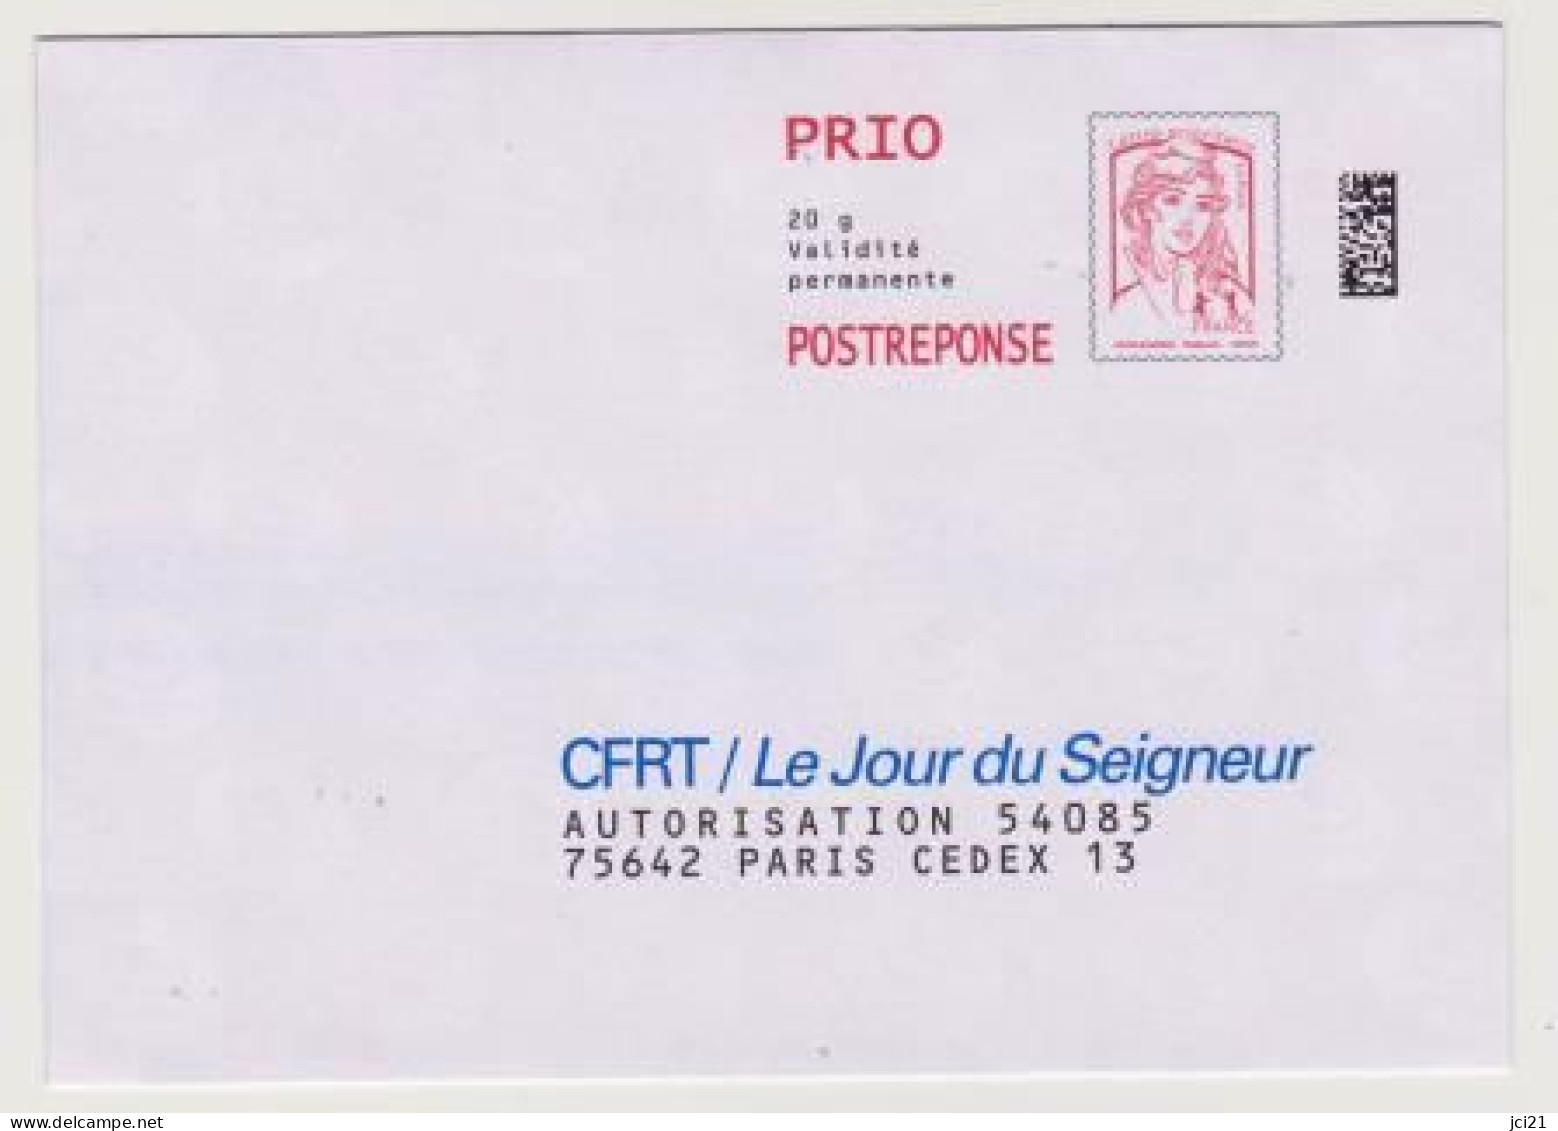 PAP "Marianne De La Jeunesse" Ciappa&Kavena POSTREPONSE PRIO Datamatrix -CFRT/Le Jour Du Seigneur- Neuve_P453 - PAP : Antwoord /Ciappa-Kavena